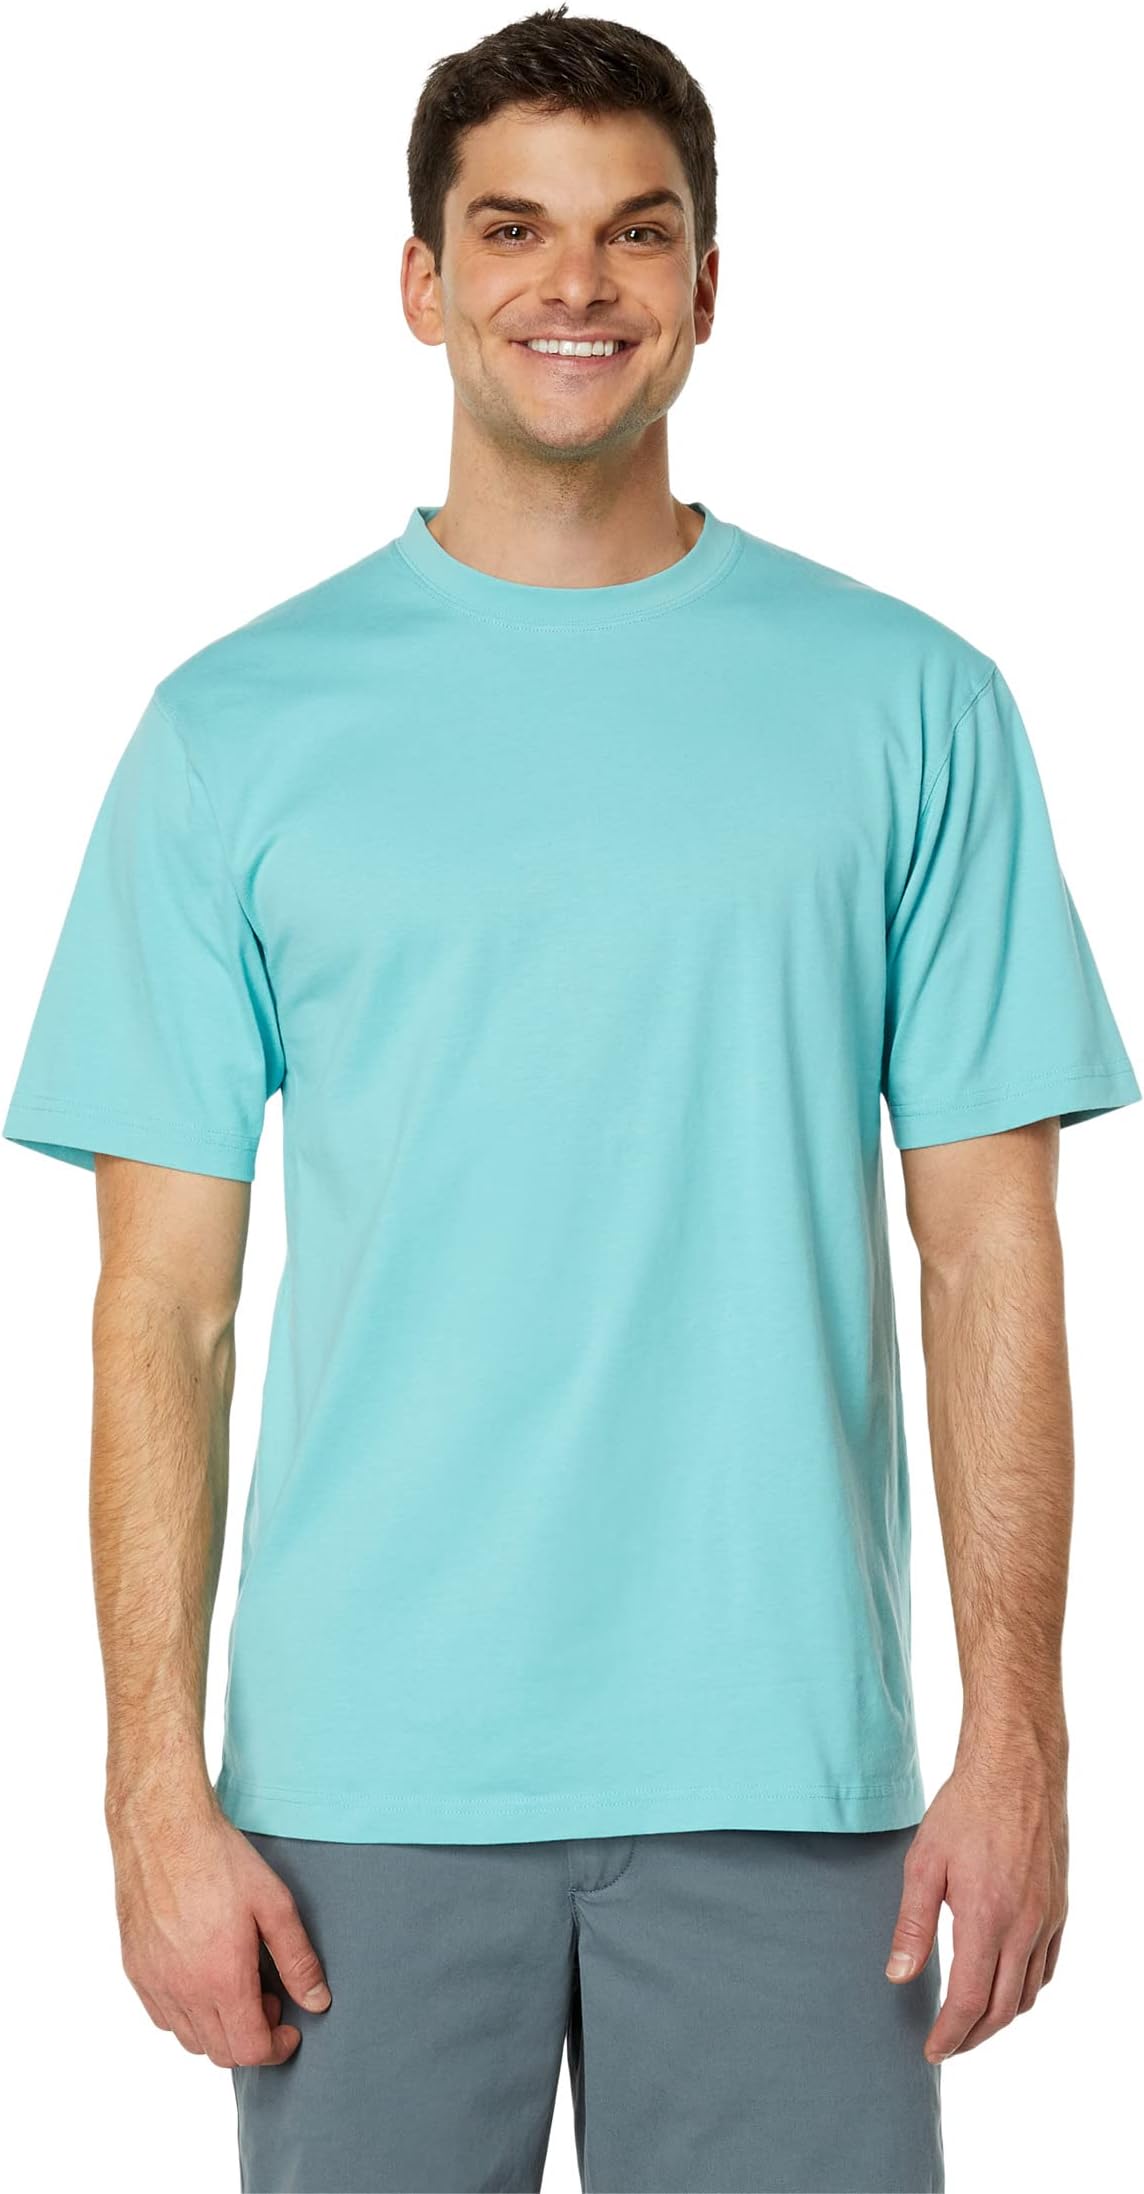 Беззаботная неусадочная футболка без кармана с коротким рукавом L.L.Bean, цвет Sea Aqua sea beach aqua park